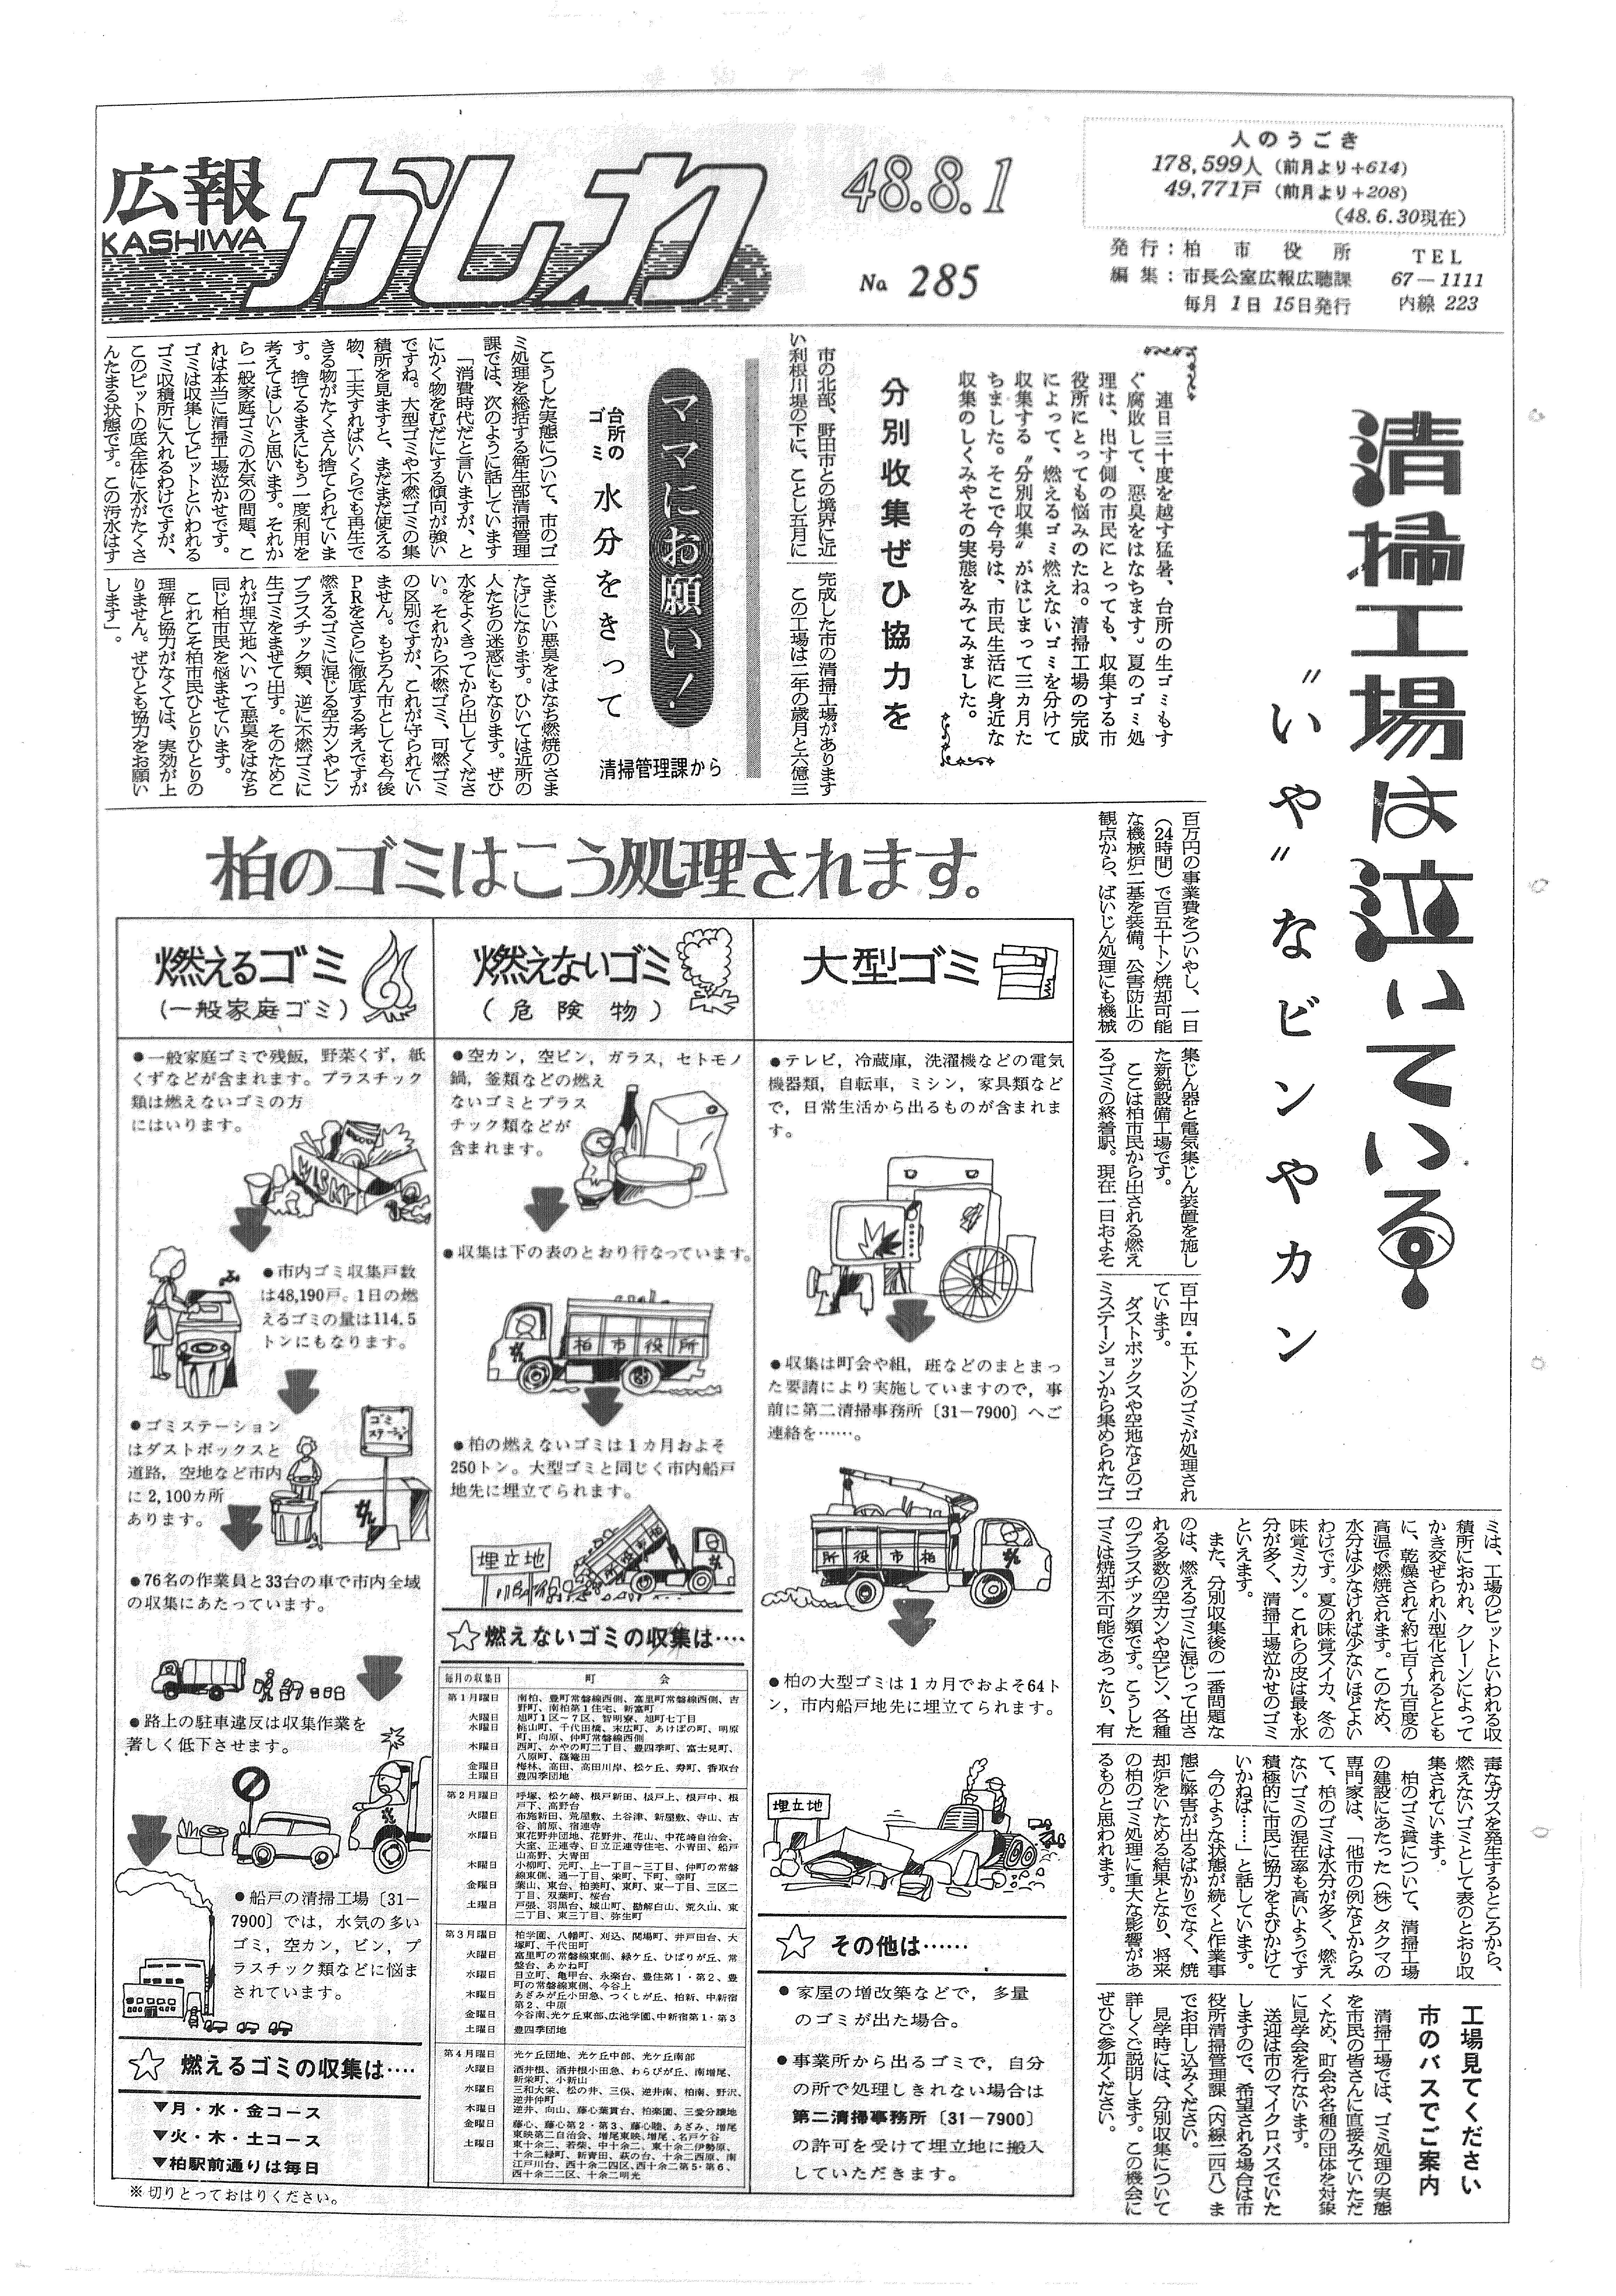 広報かしわ　昭和48年8月1日発行　285号